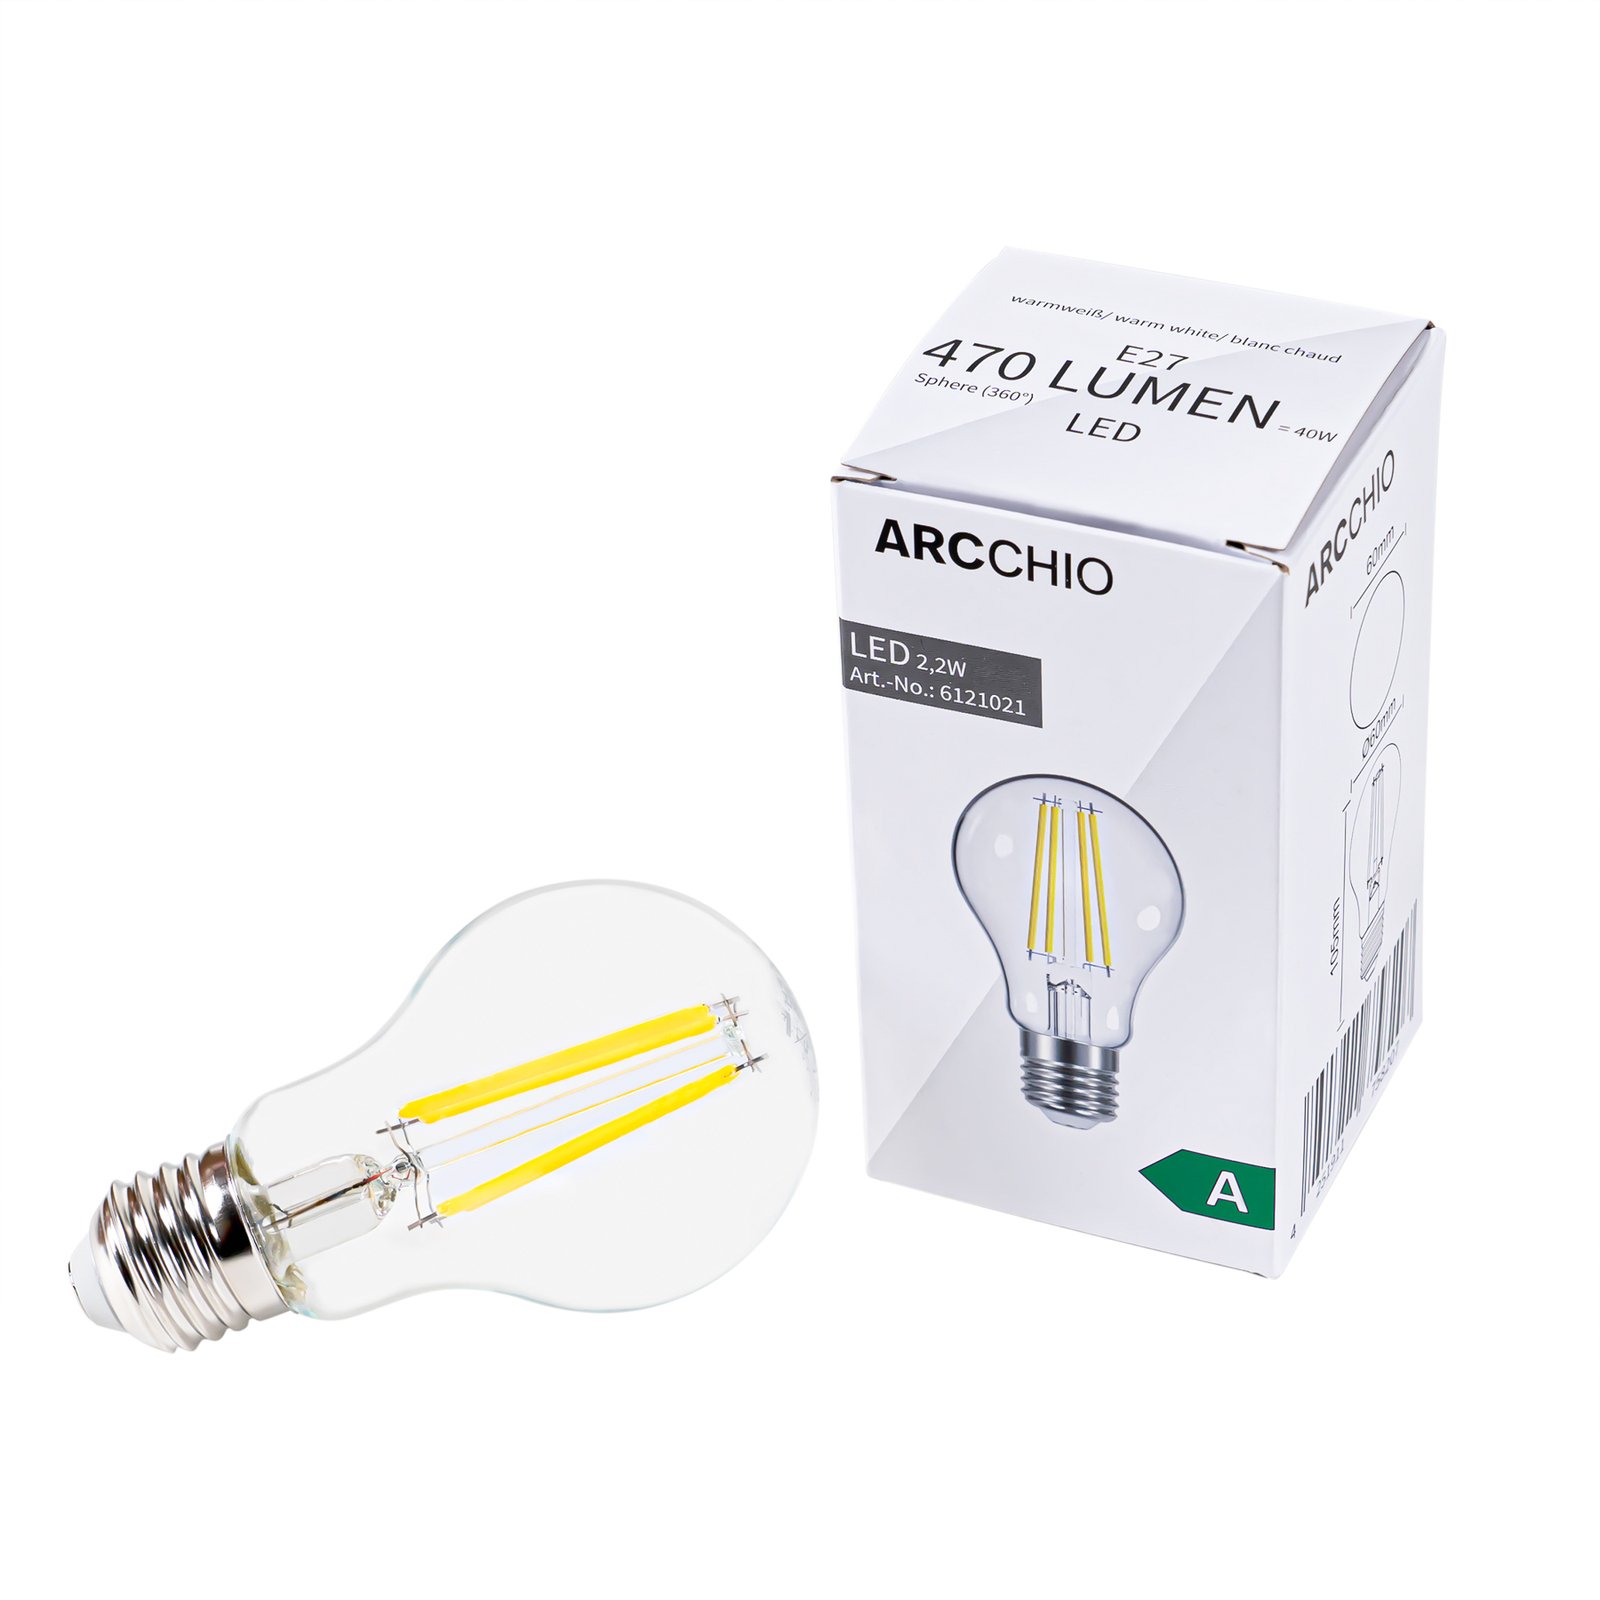 LED filament lamp E27 2,2W, 470 Lumen, helder